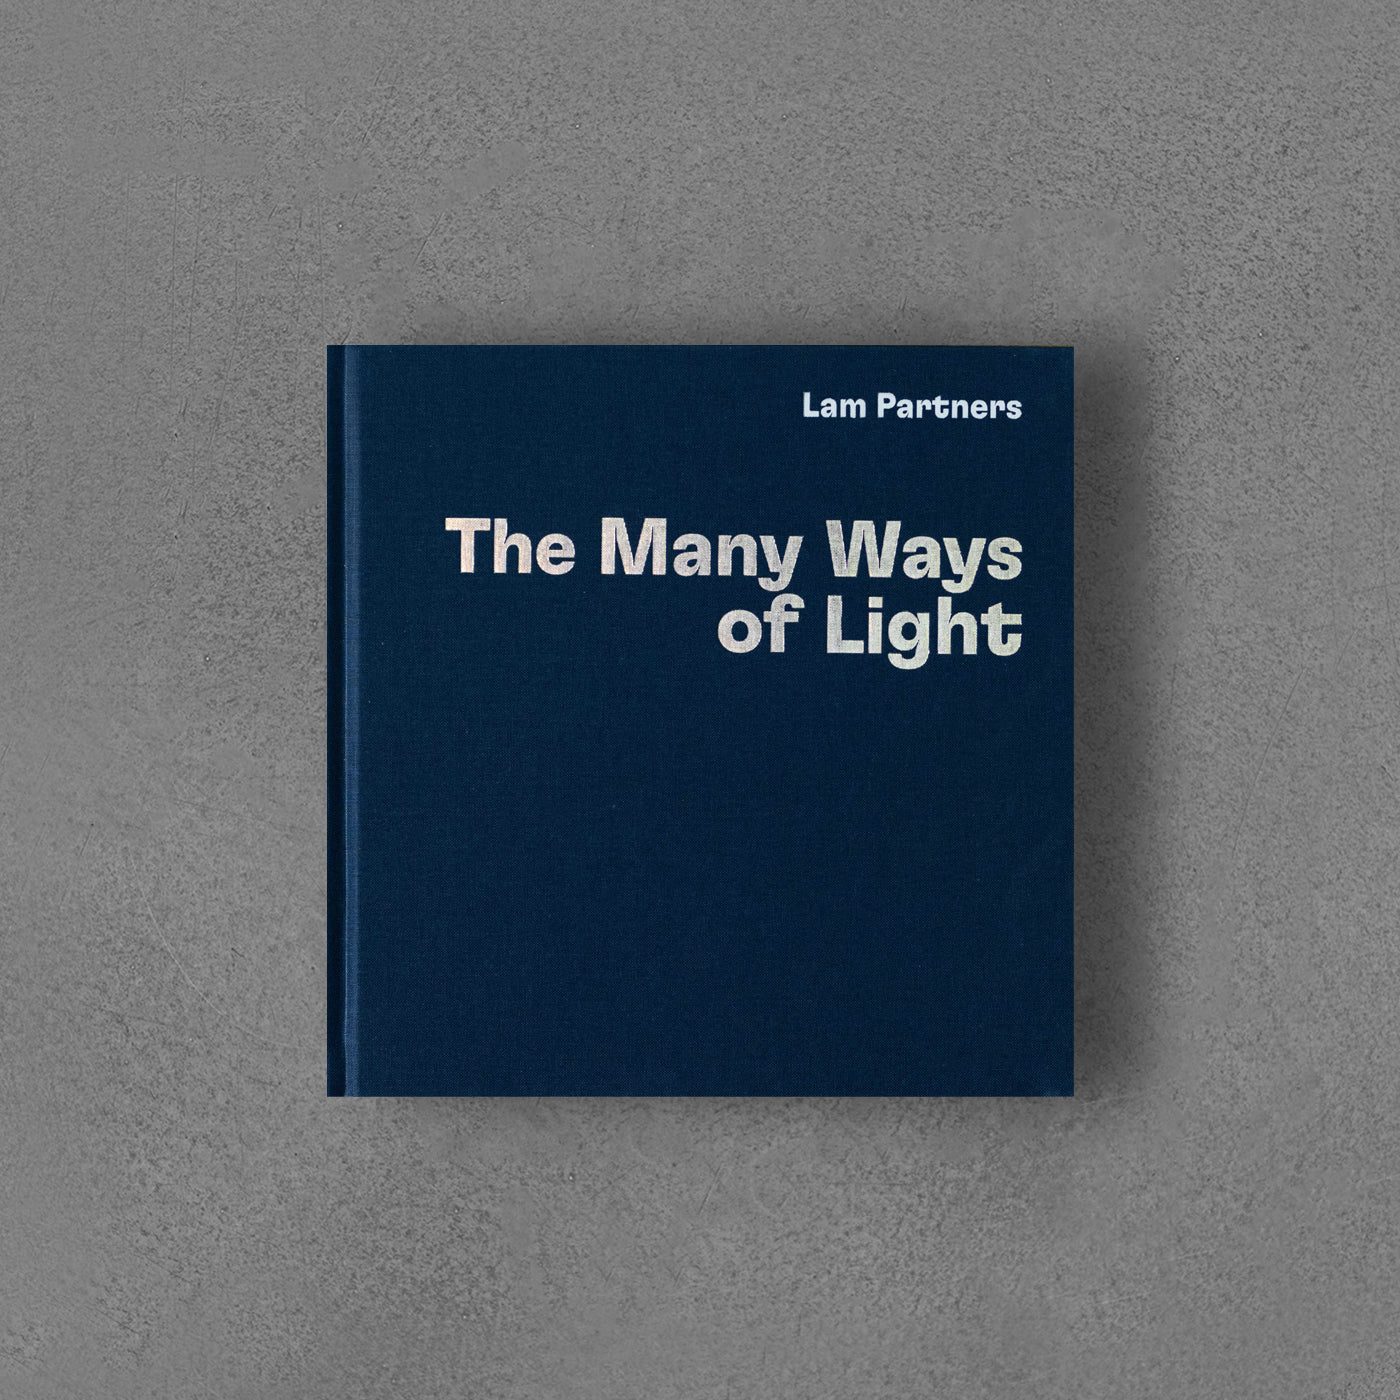 Lam Partners: The Many Ways of Light